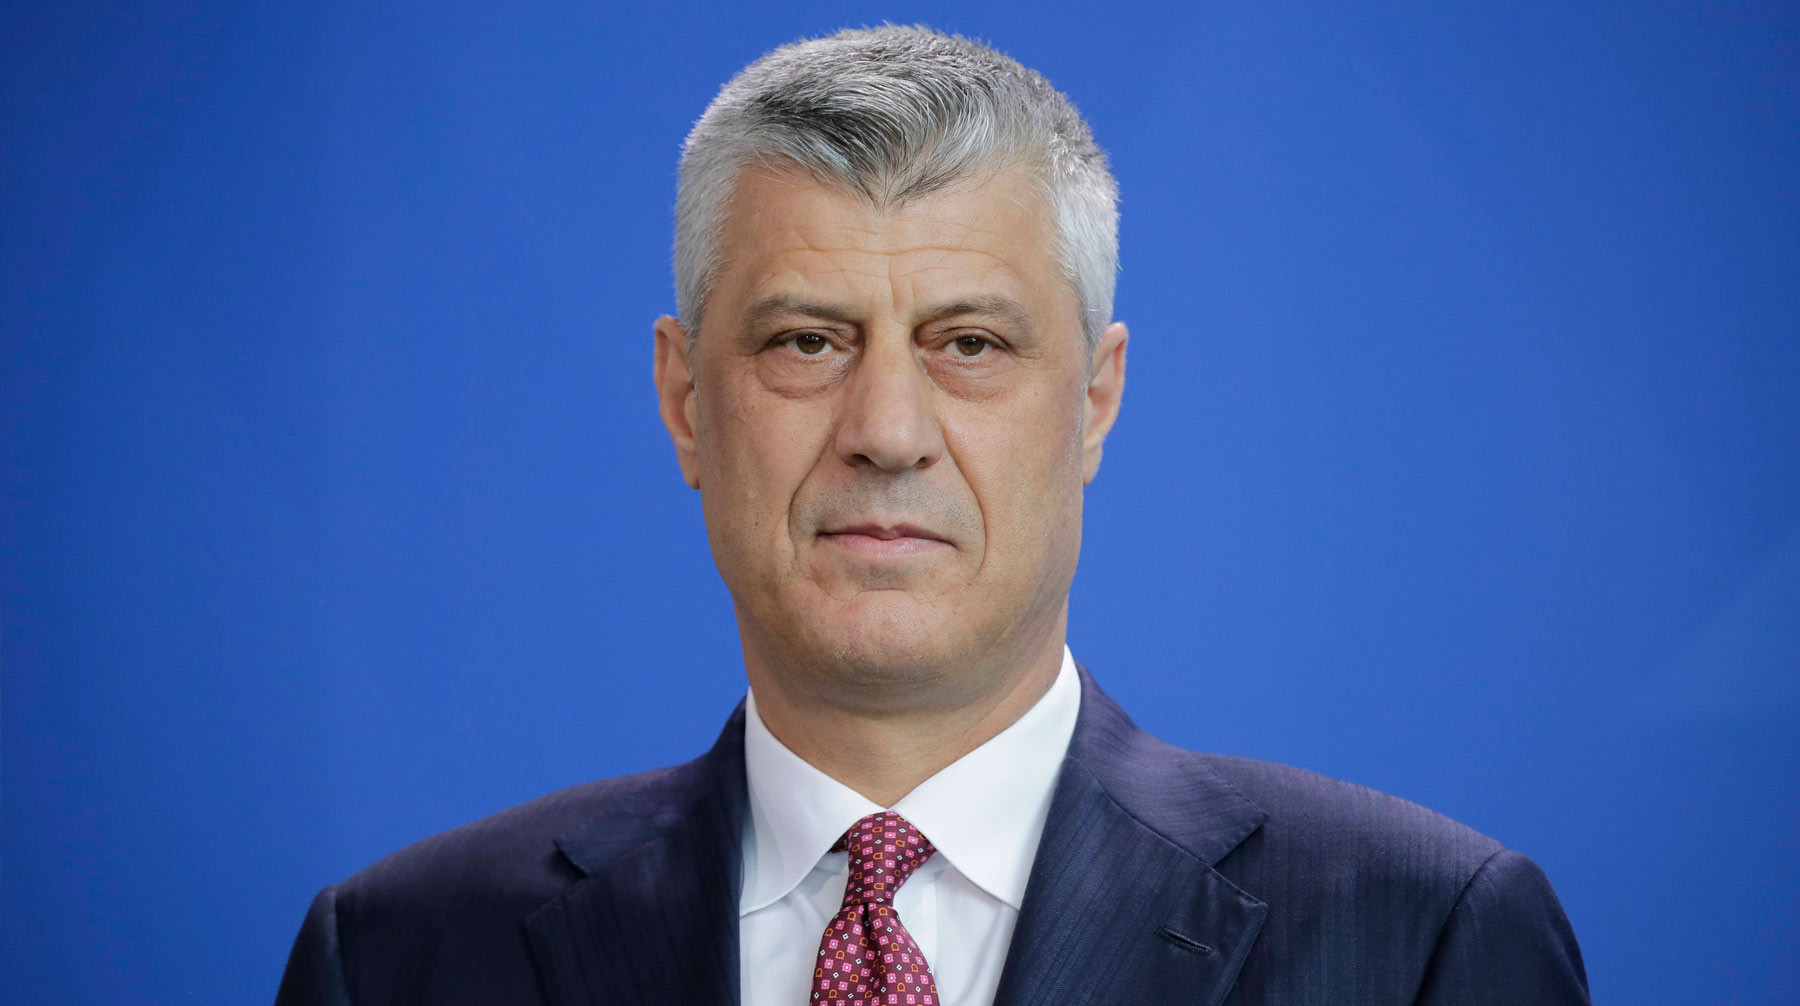 Экс-командиров Освободительной армии Косова подозревают в убийствах около 100 жителей Хашим Тачи вступил в должность президента самопровозглашенной республики Косово в 2016 году